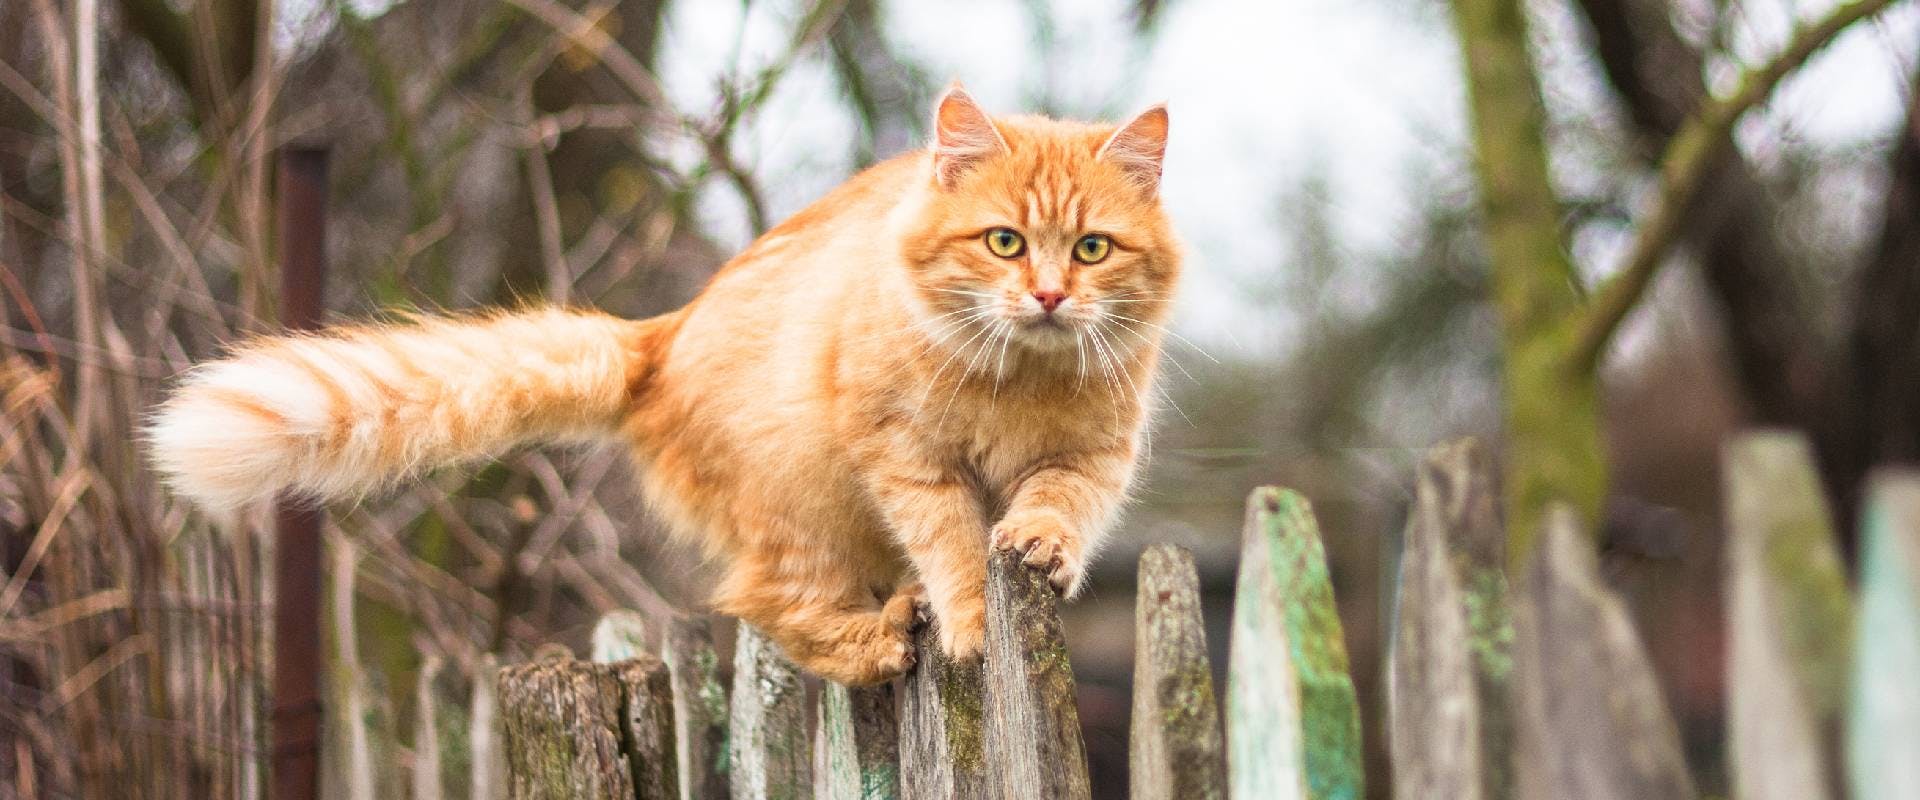 orange cat walking across a fence